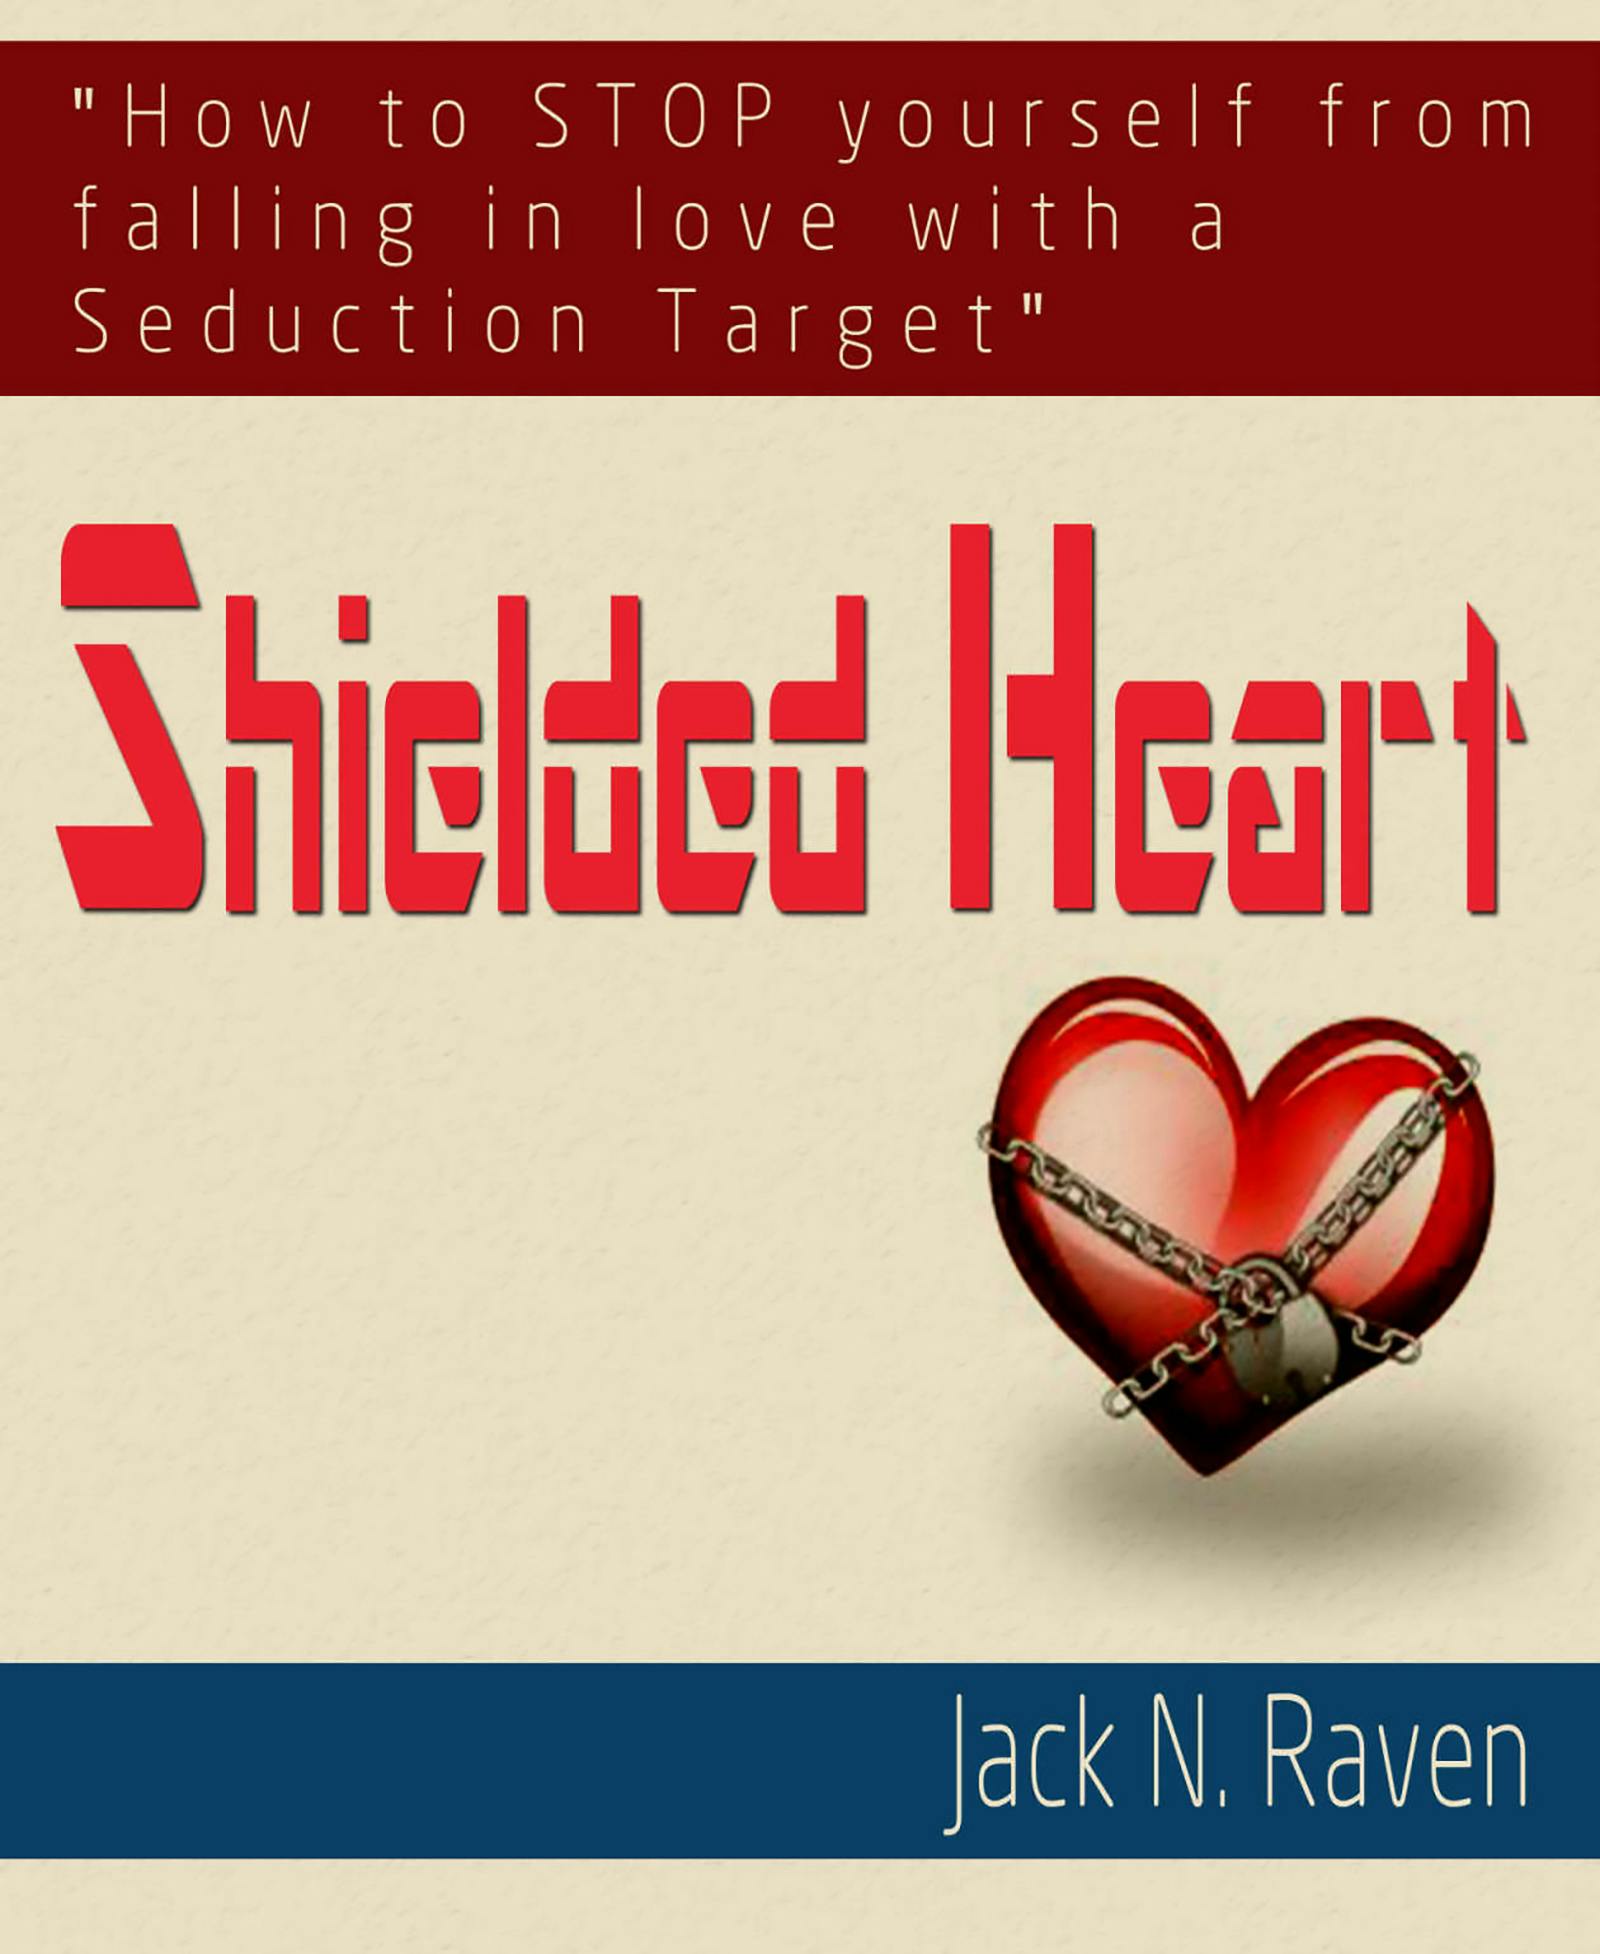 Shielded Heart - Jack N. Raven